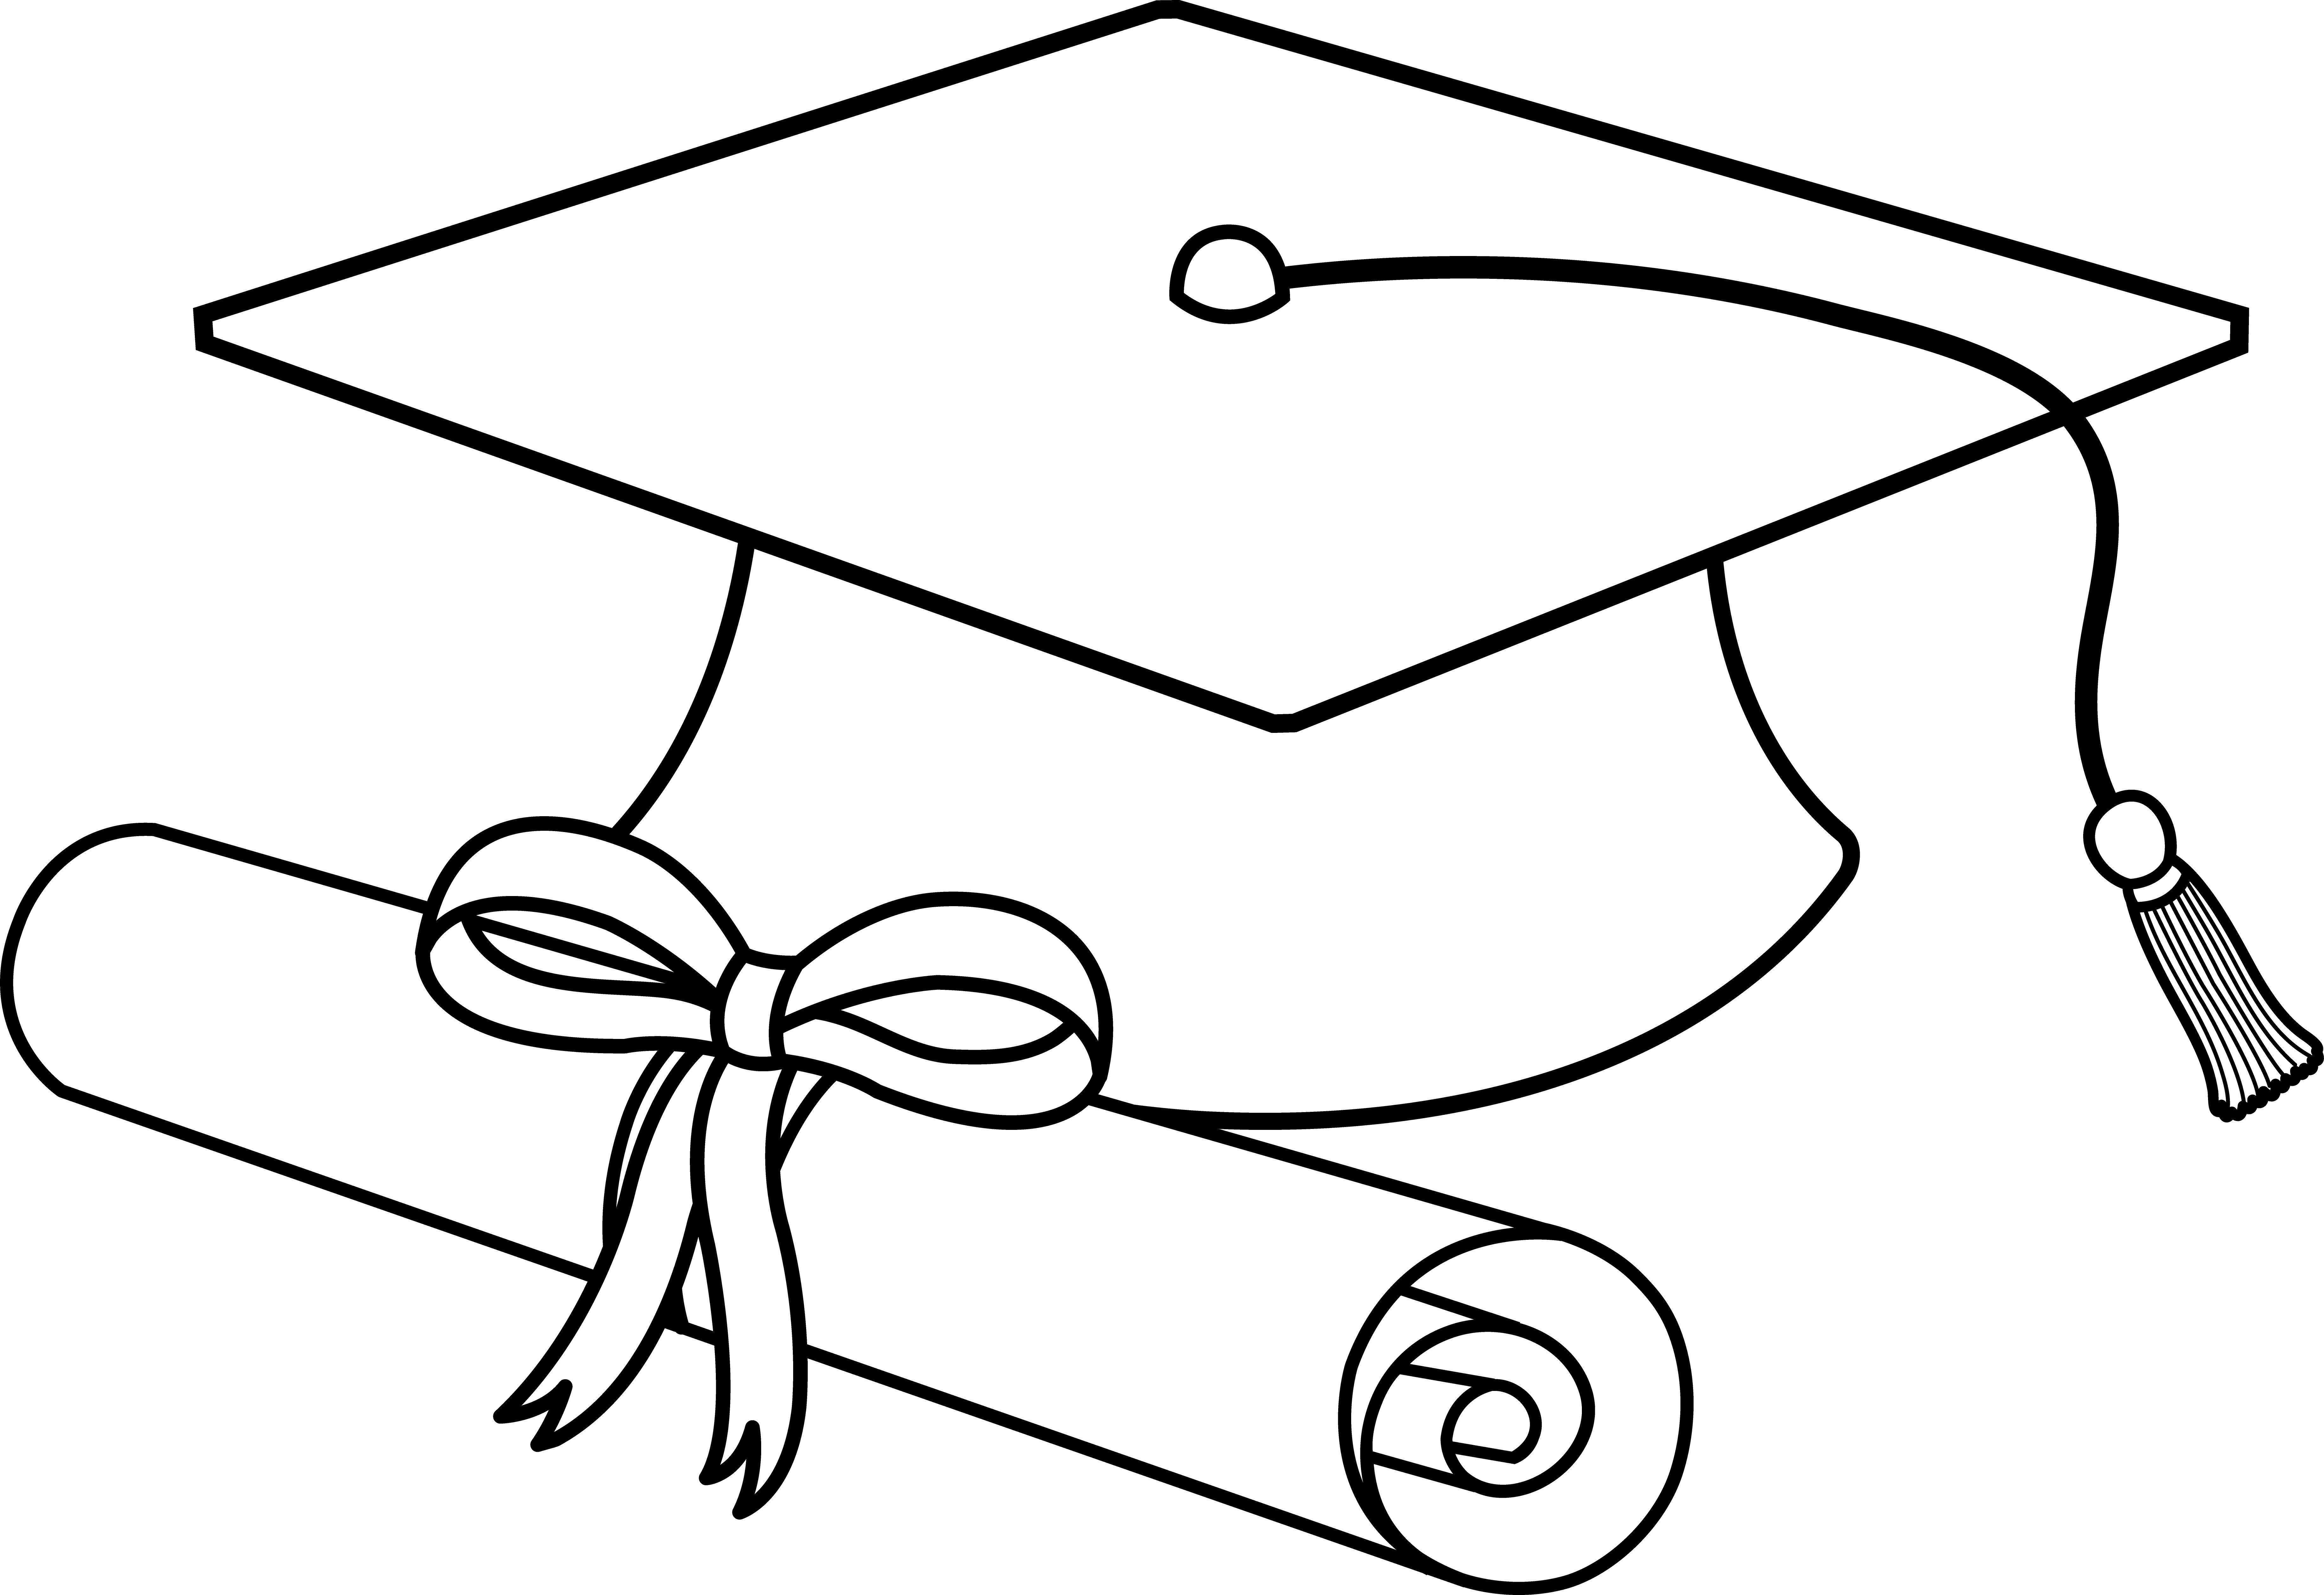 Graduation Hat clip art - vec